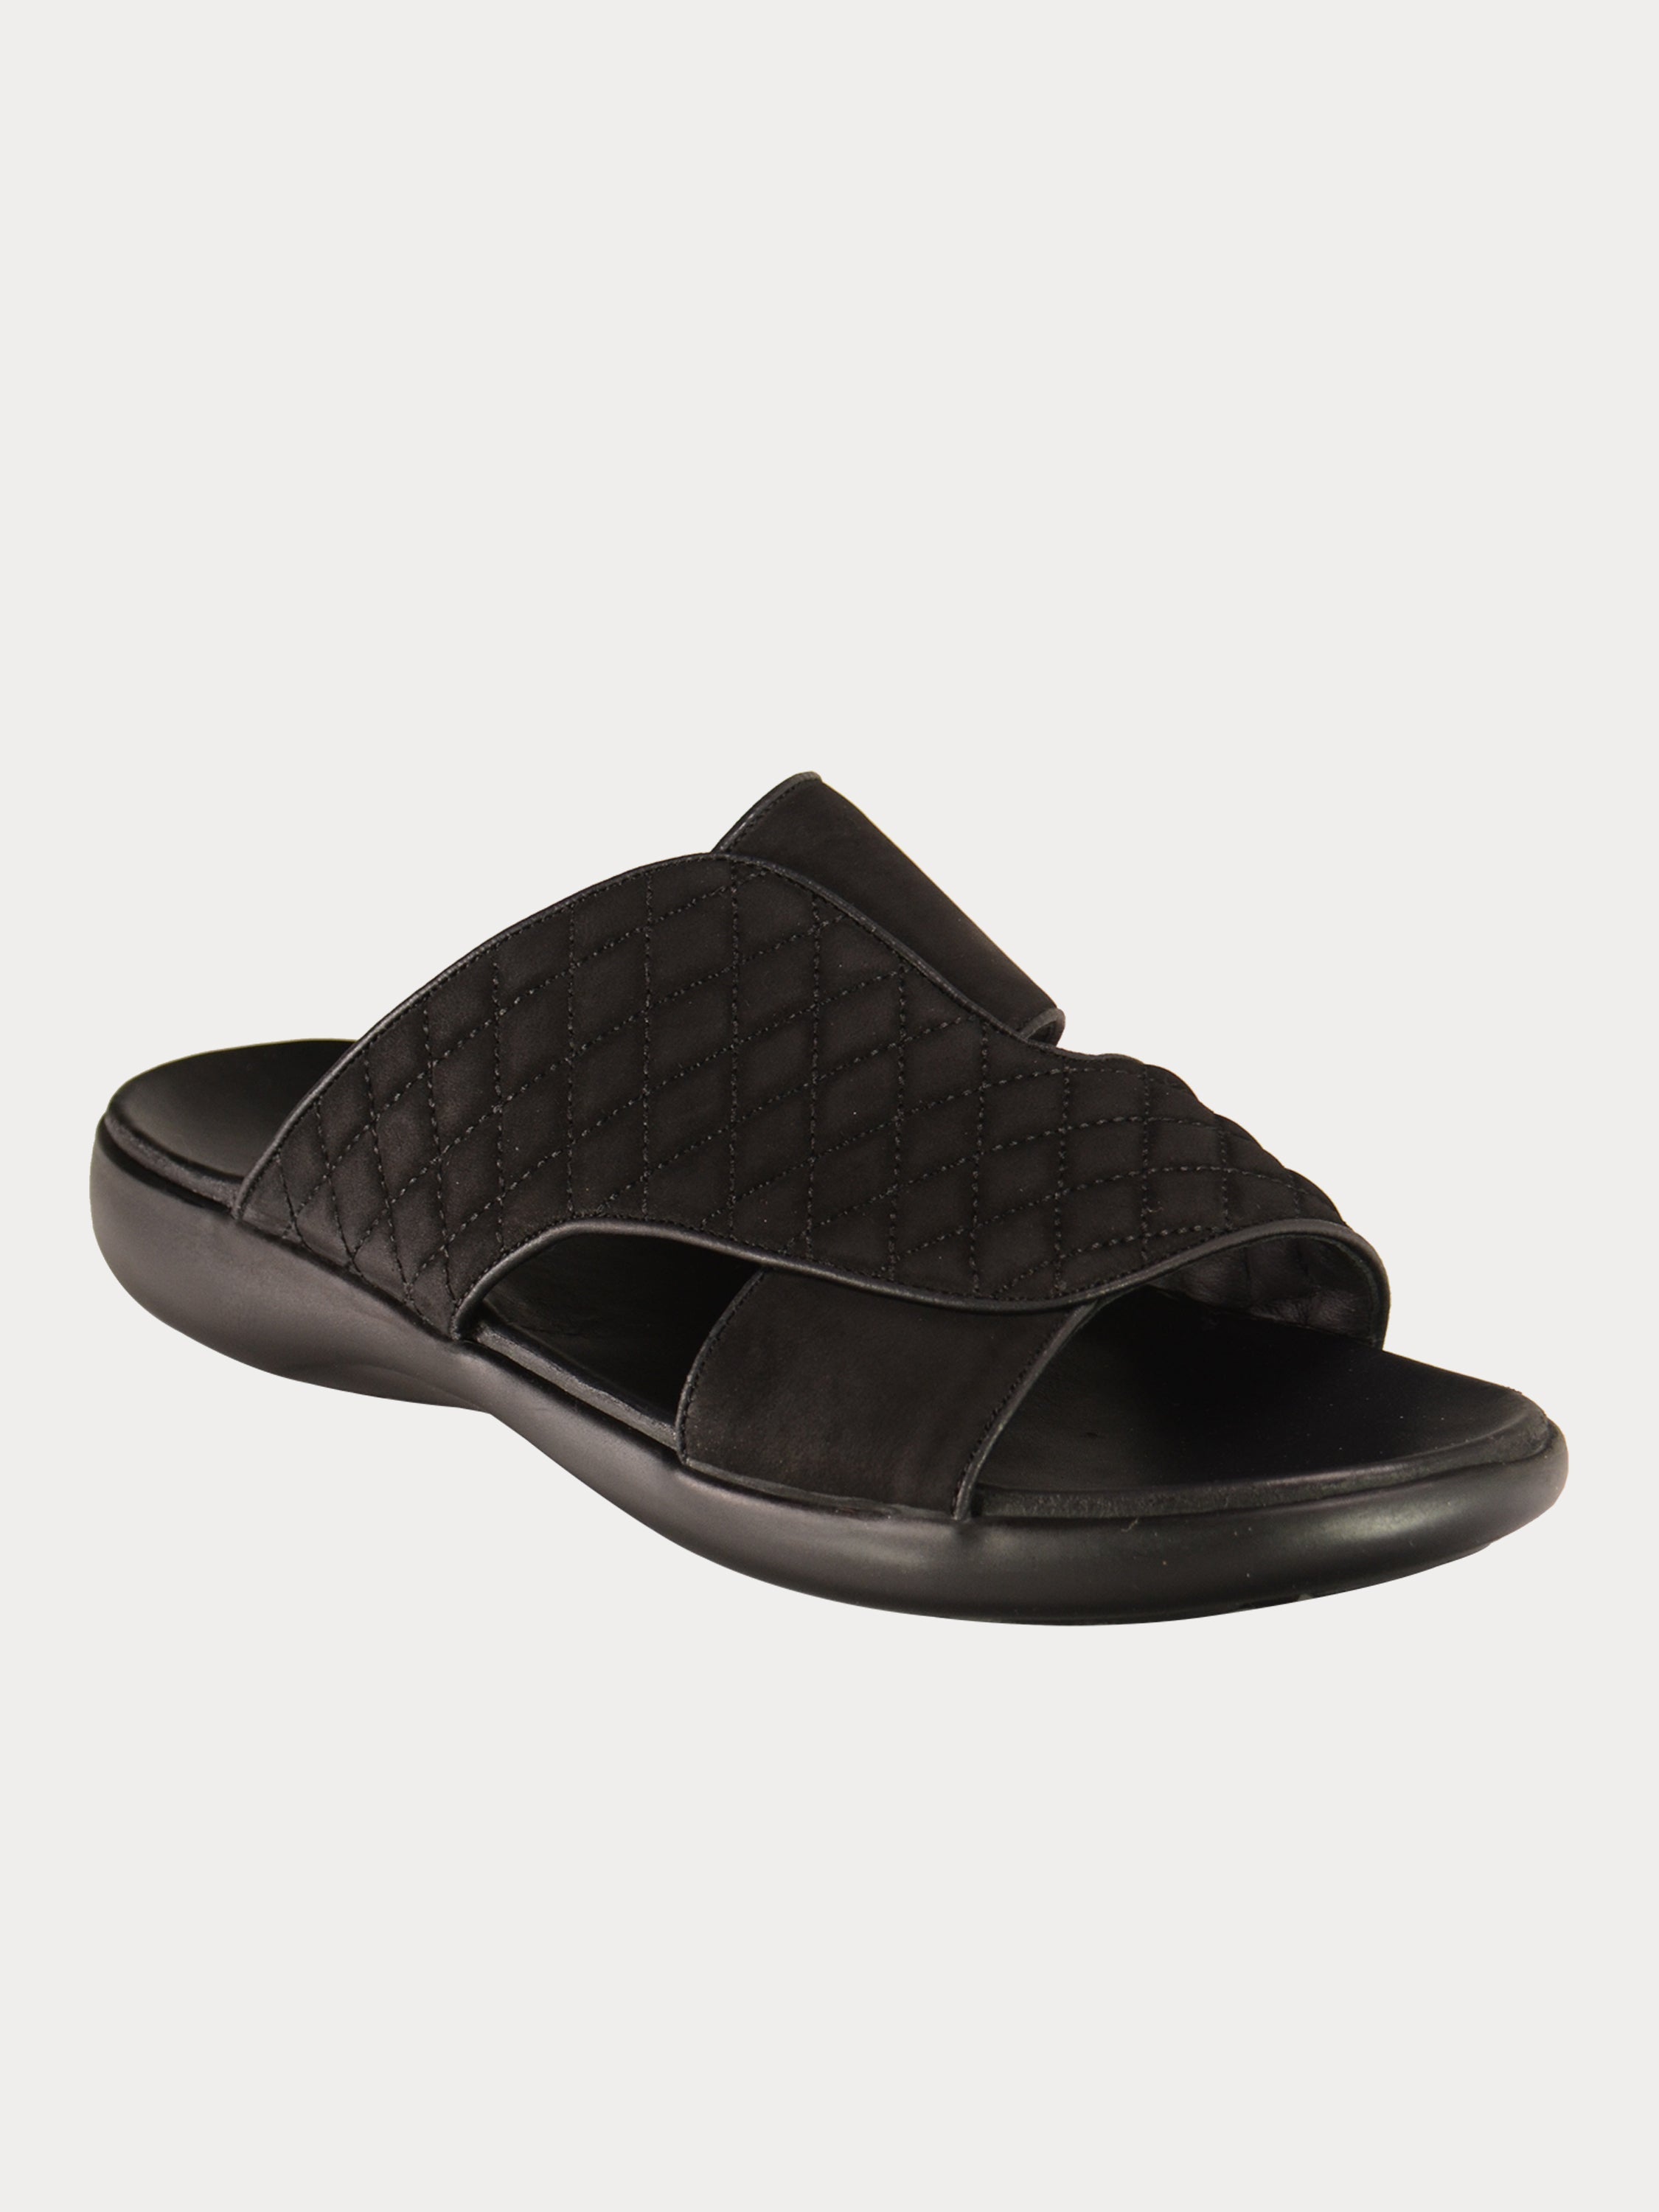 Barjeel Uno 0231610 Men's Arabic Sandals in Black Suede #color_Black